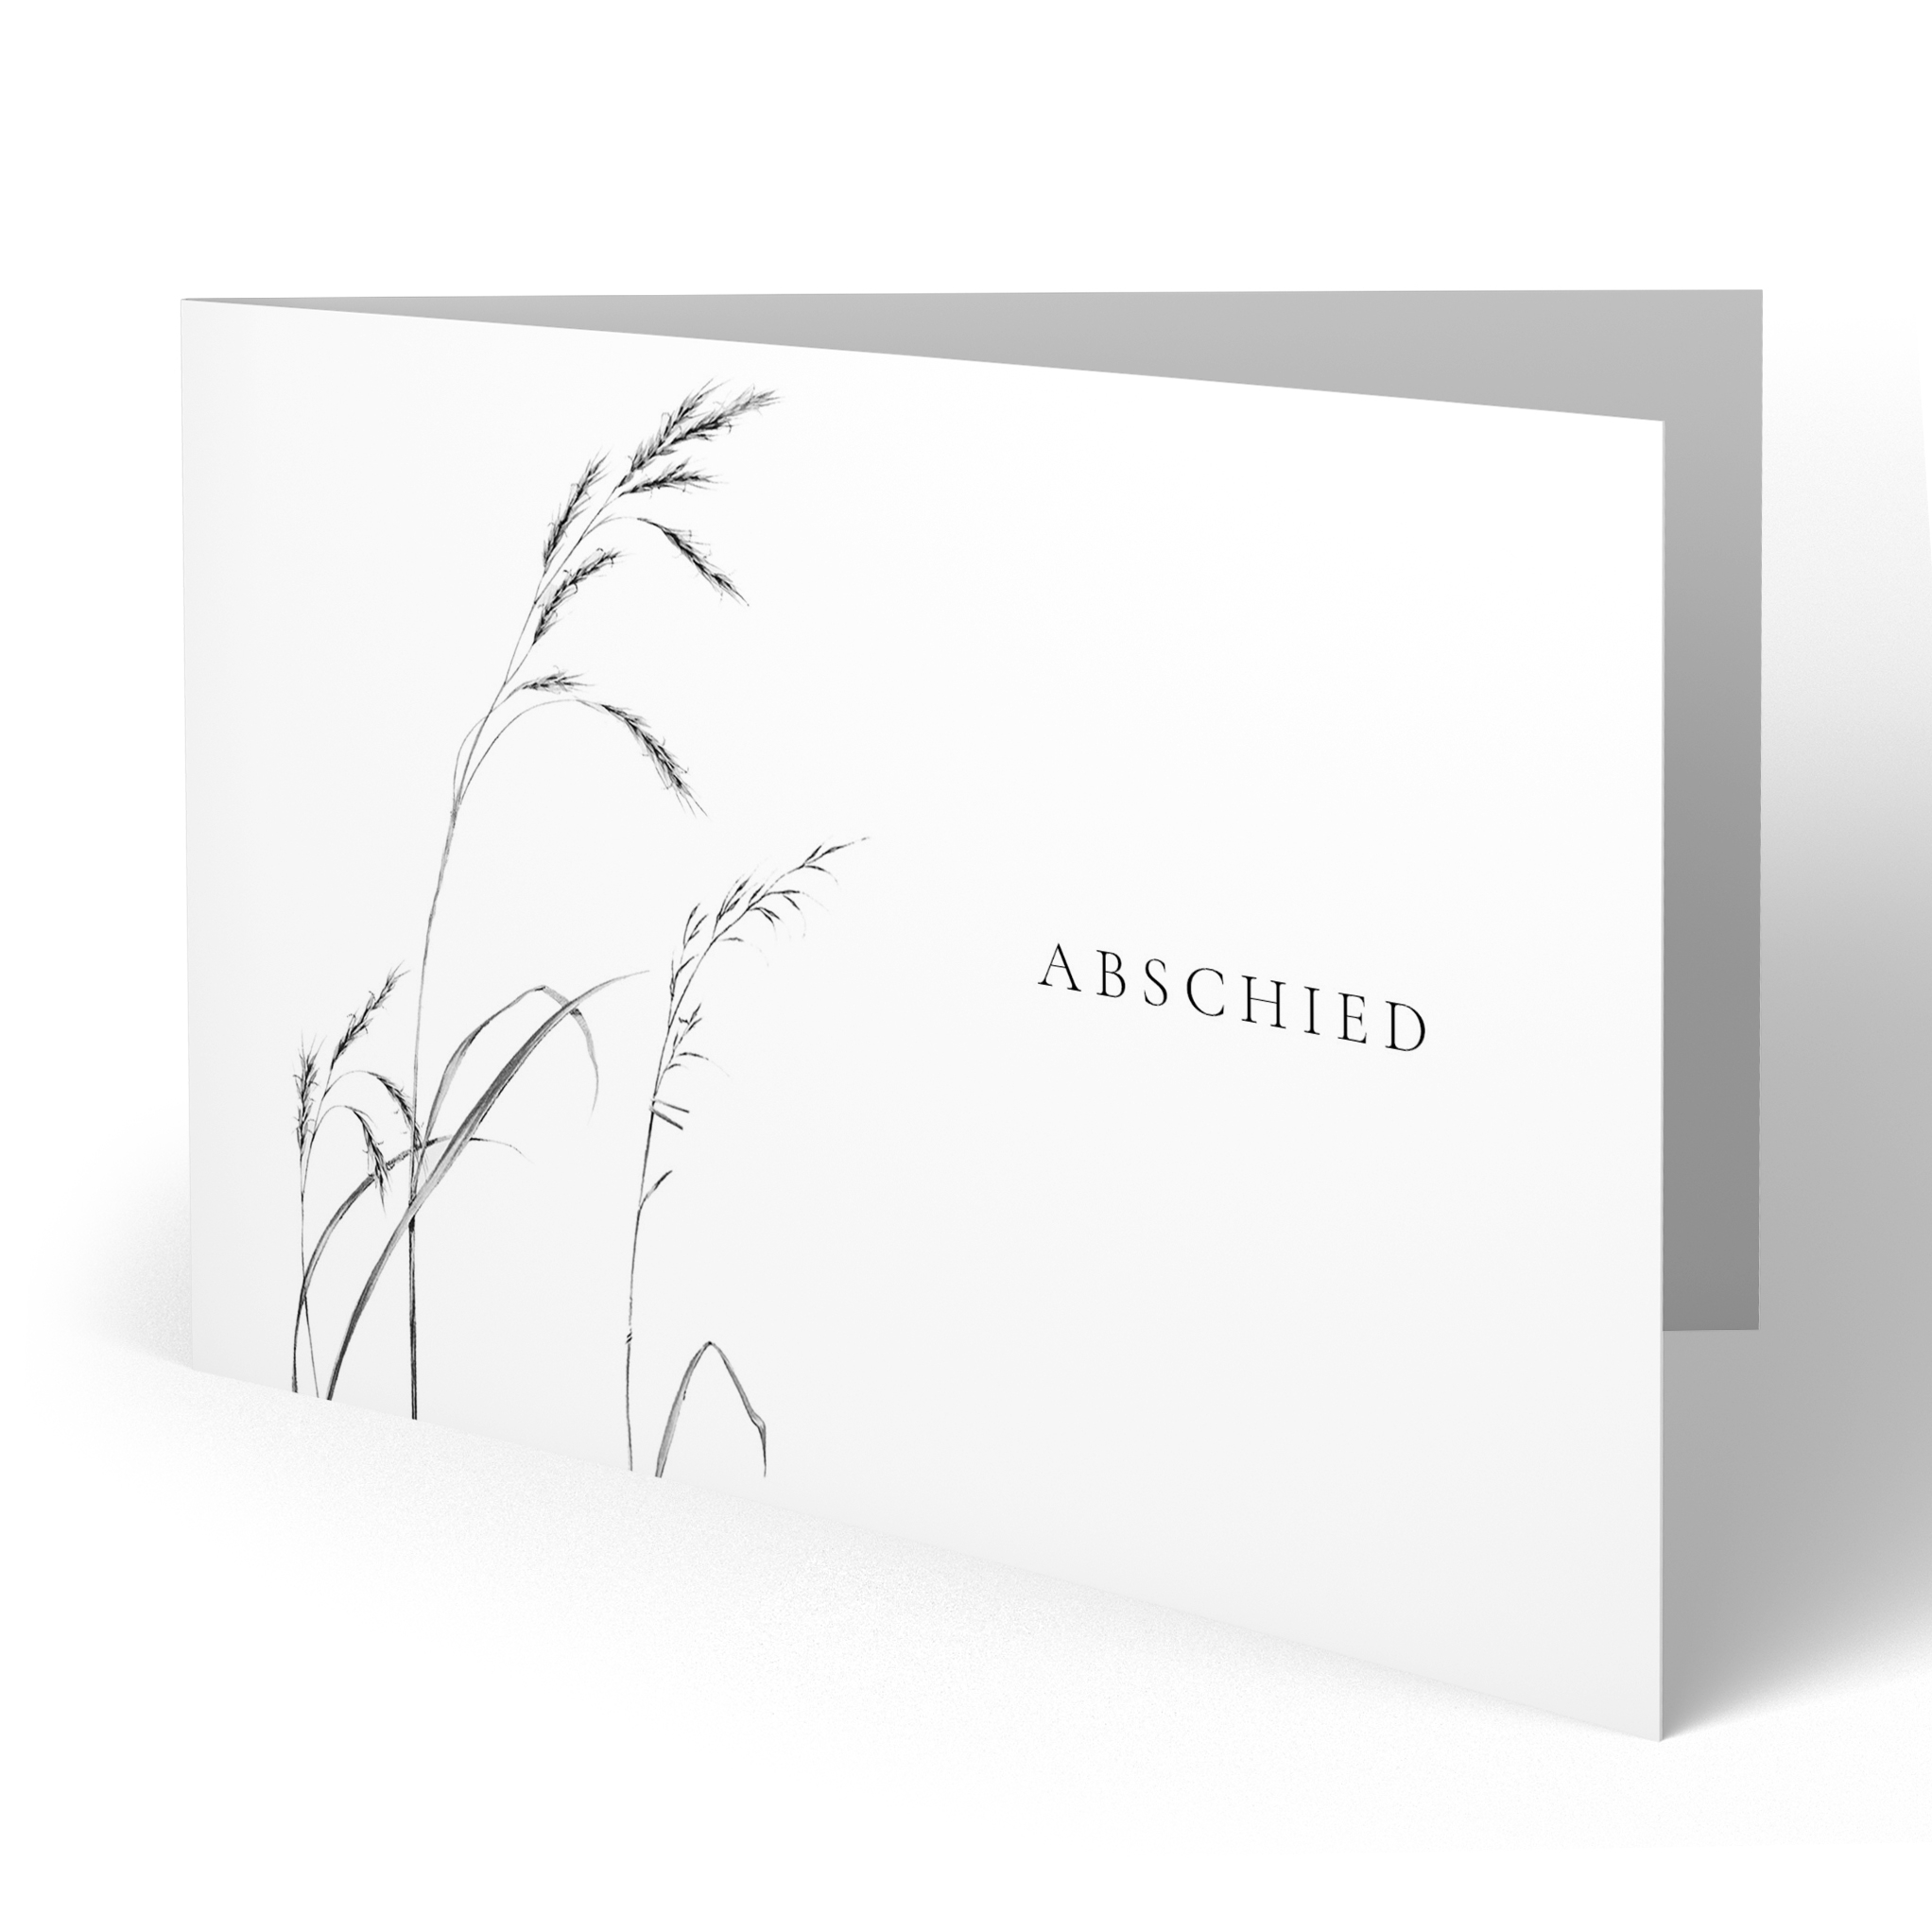 Trauerkarten Einladung Trauerfeier Beileid Karten Trauer Danksagung Bestattung Ebay